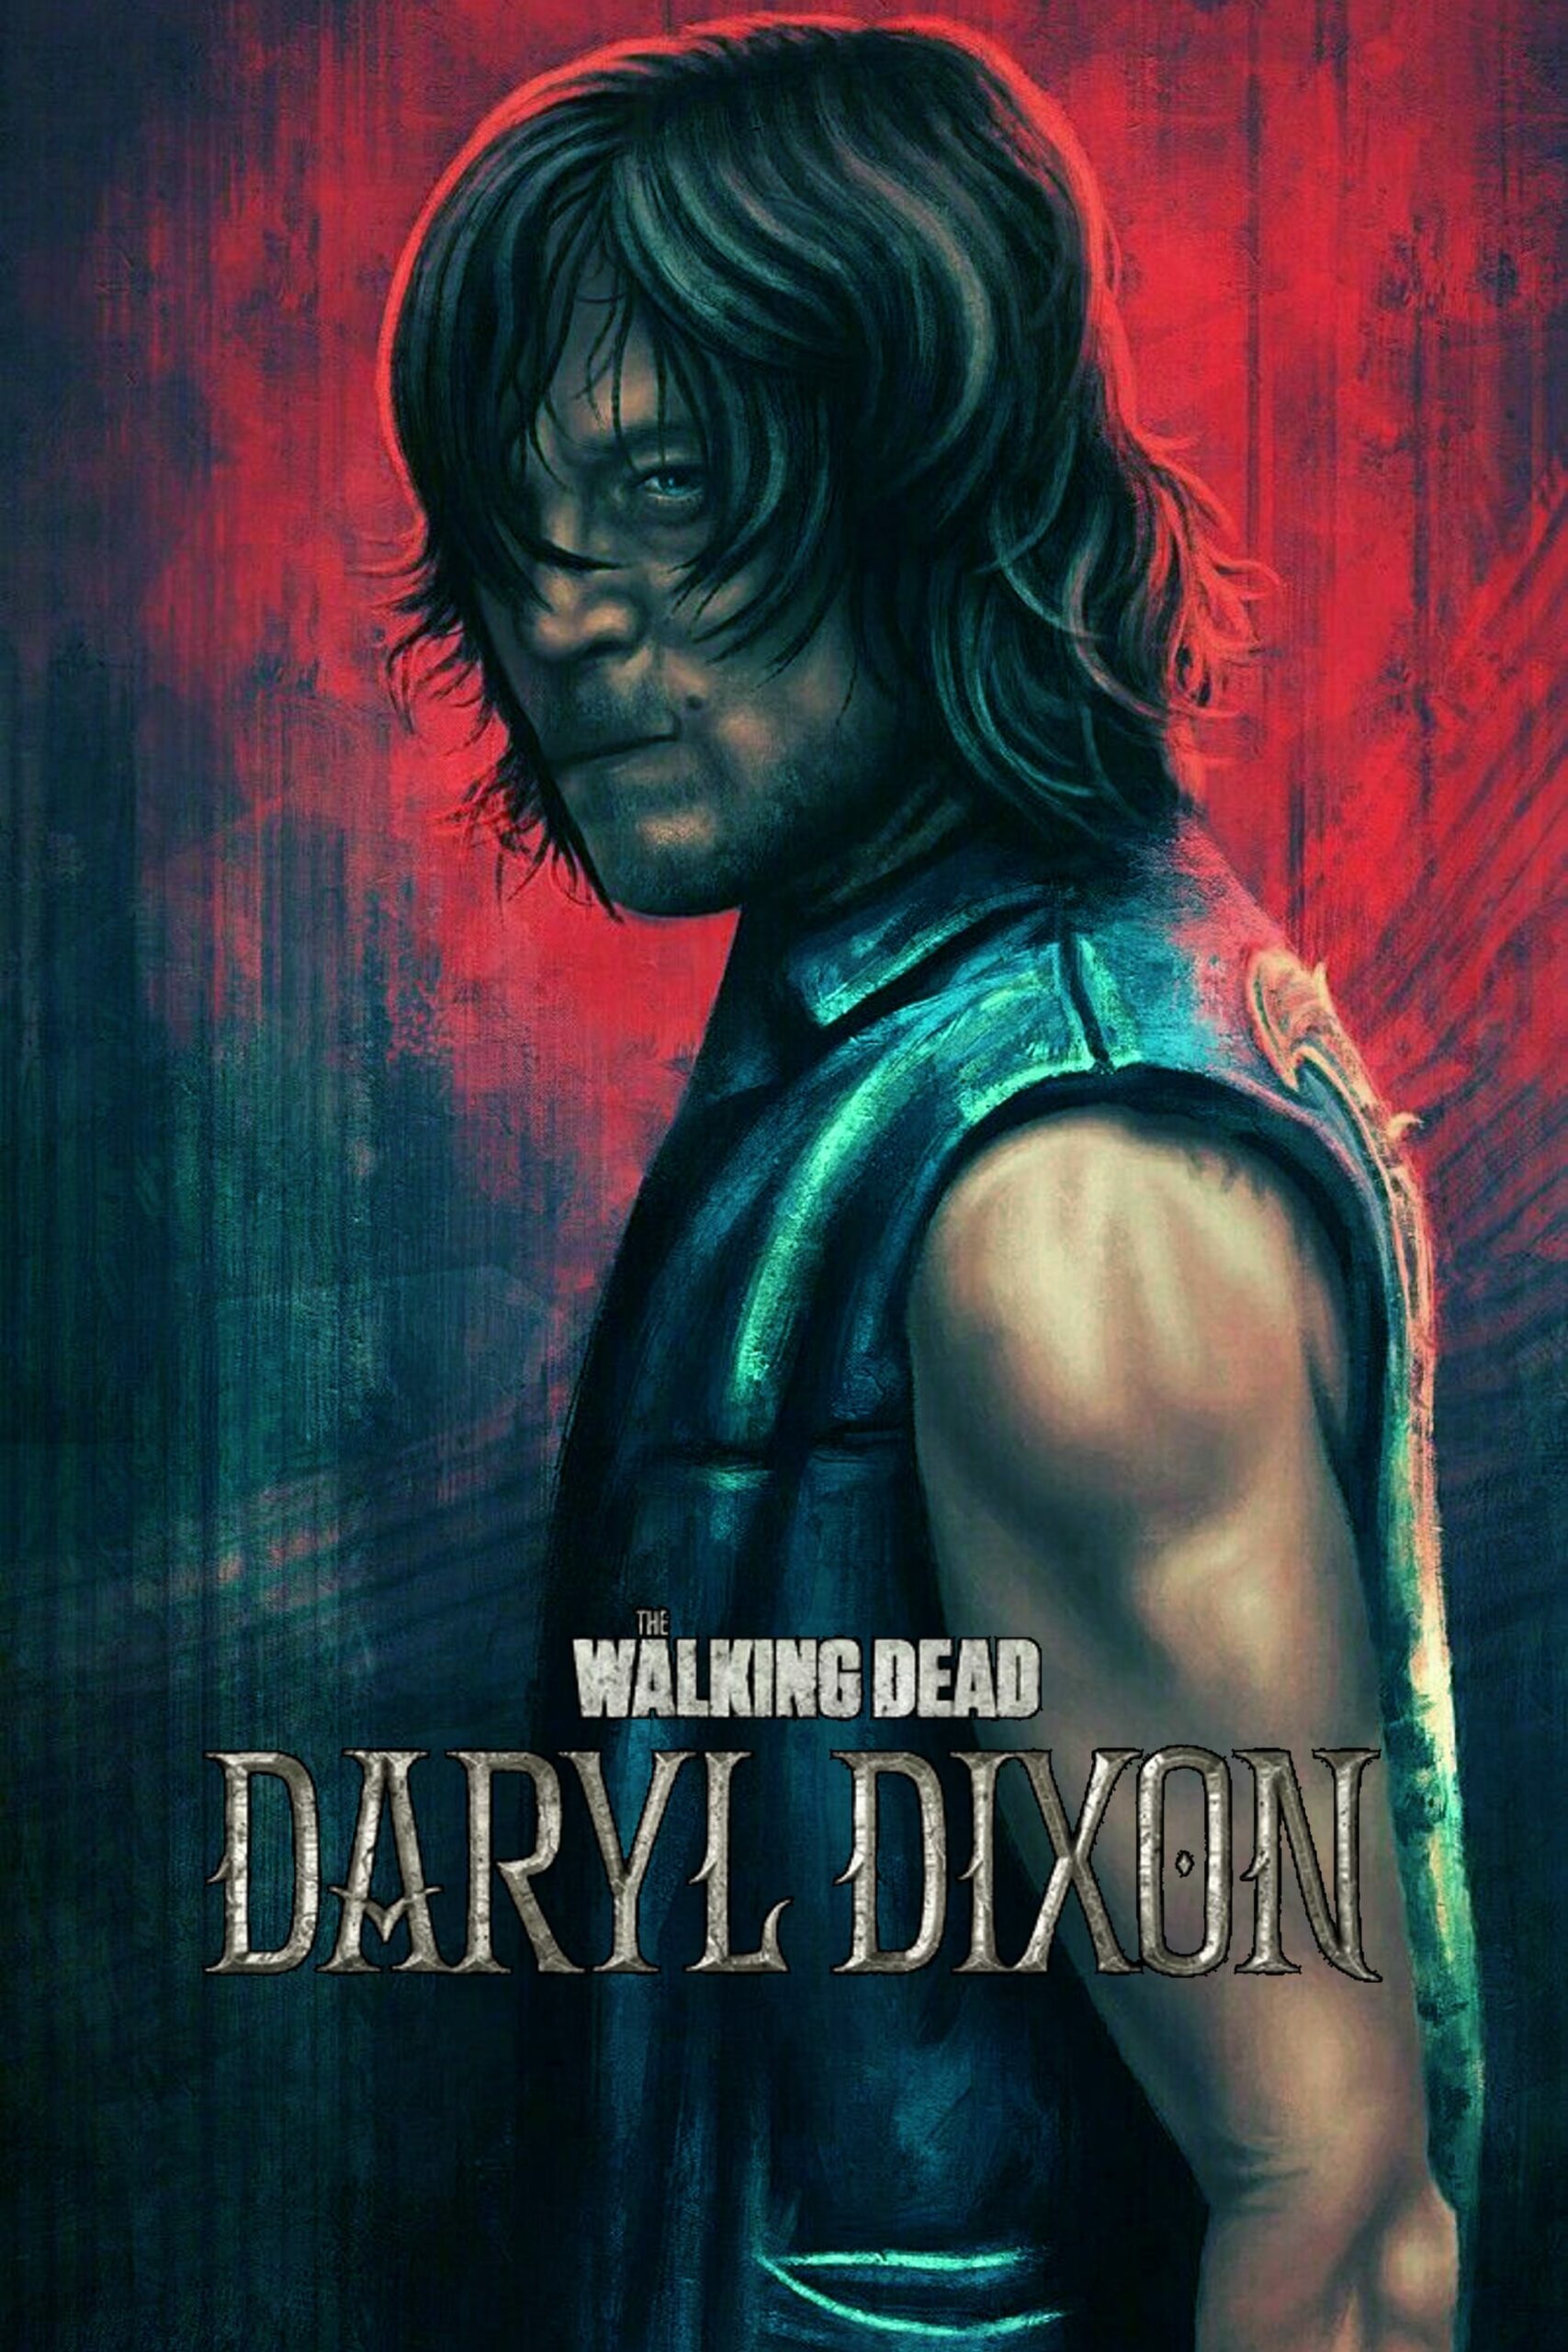 Plakát pro film “The Walking Dead: Daryl Dixon”